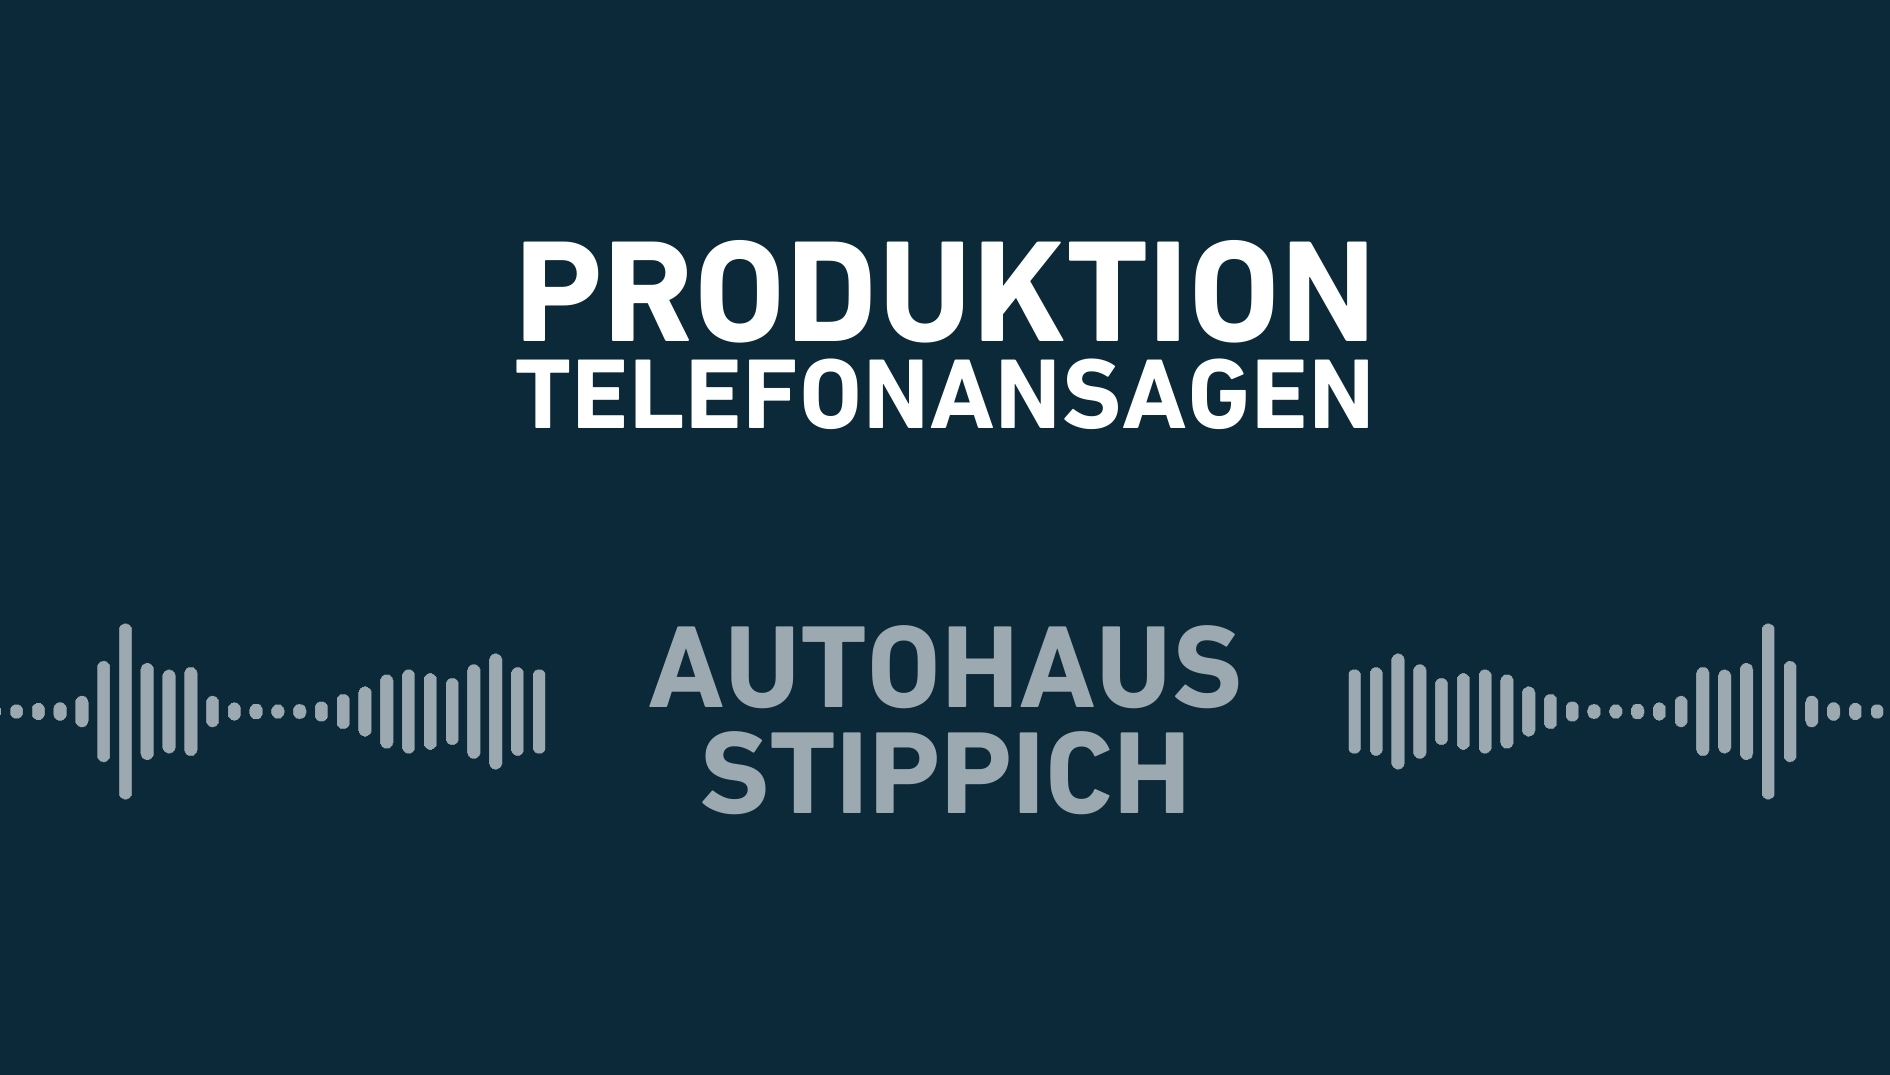 Telefonansagen: Autohaus Stippich.